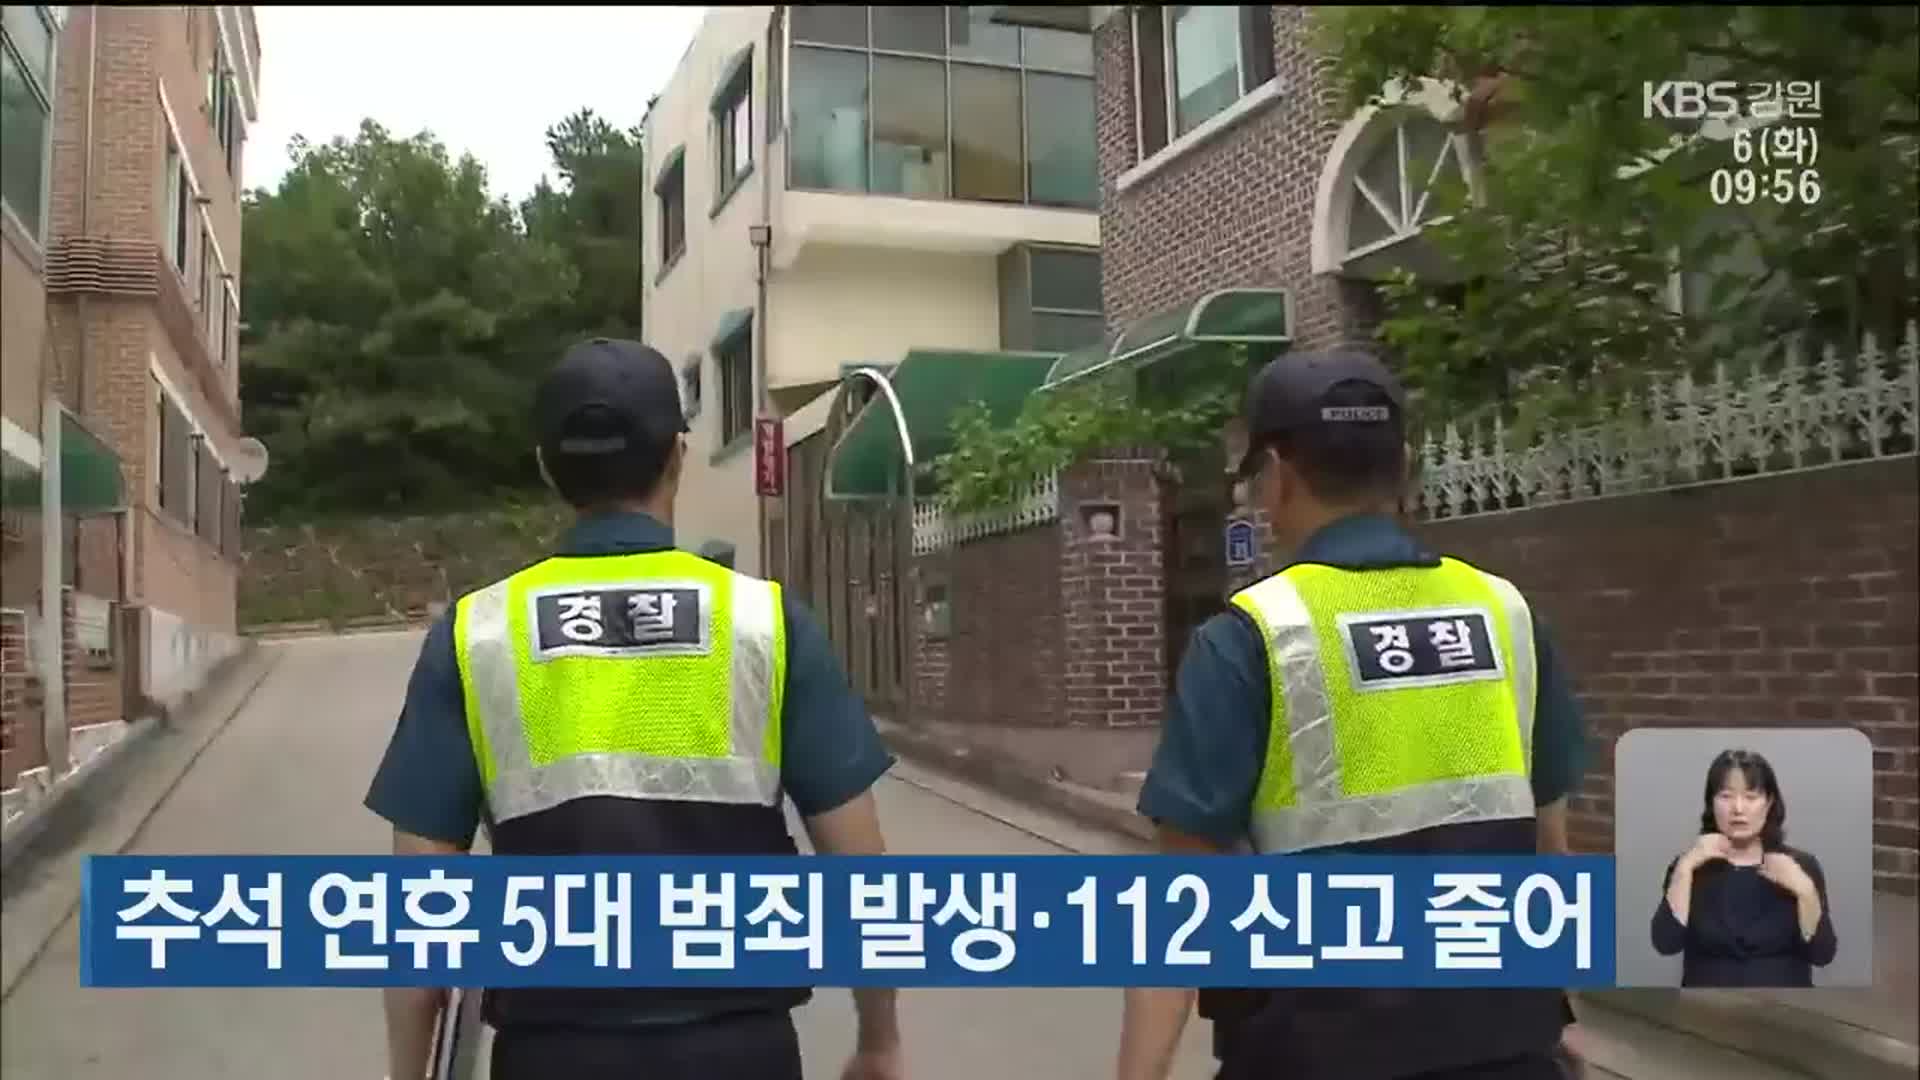 추석 연휴 5대 범죄 발생·112 신고 줄어